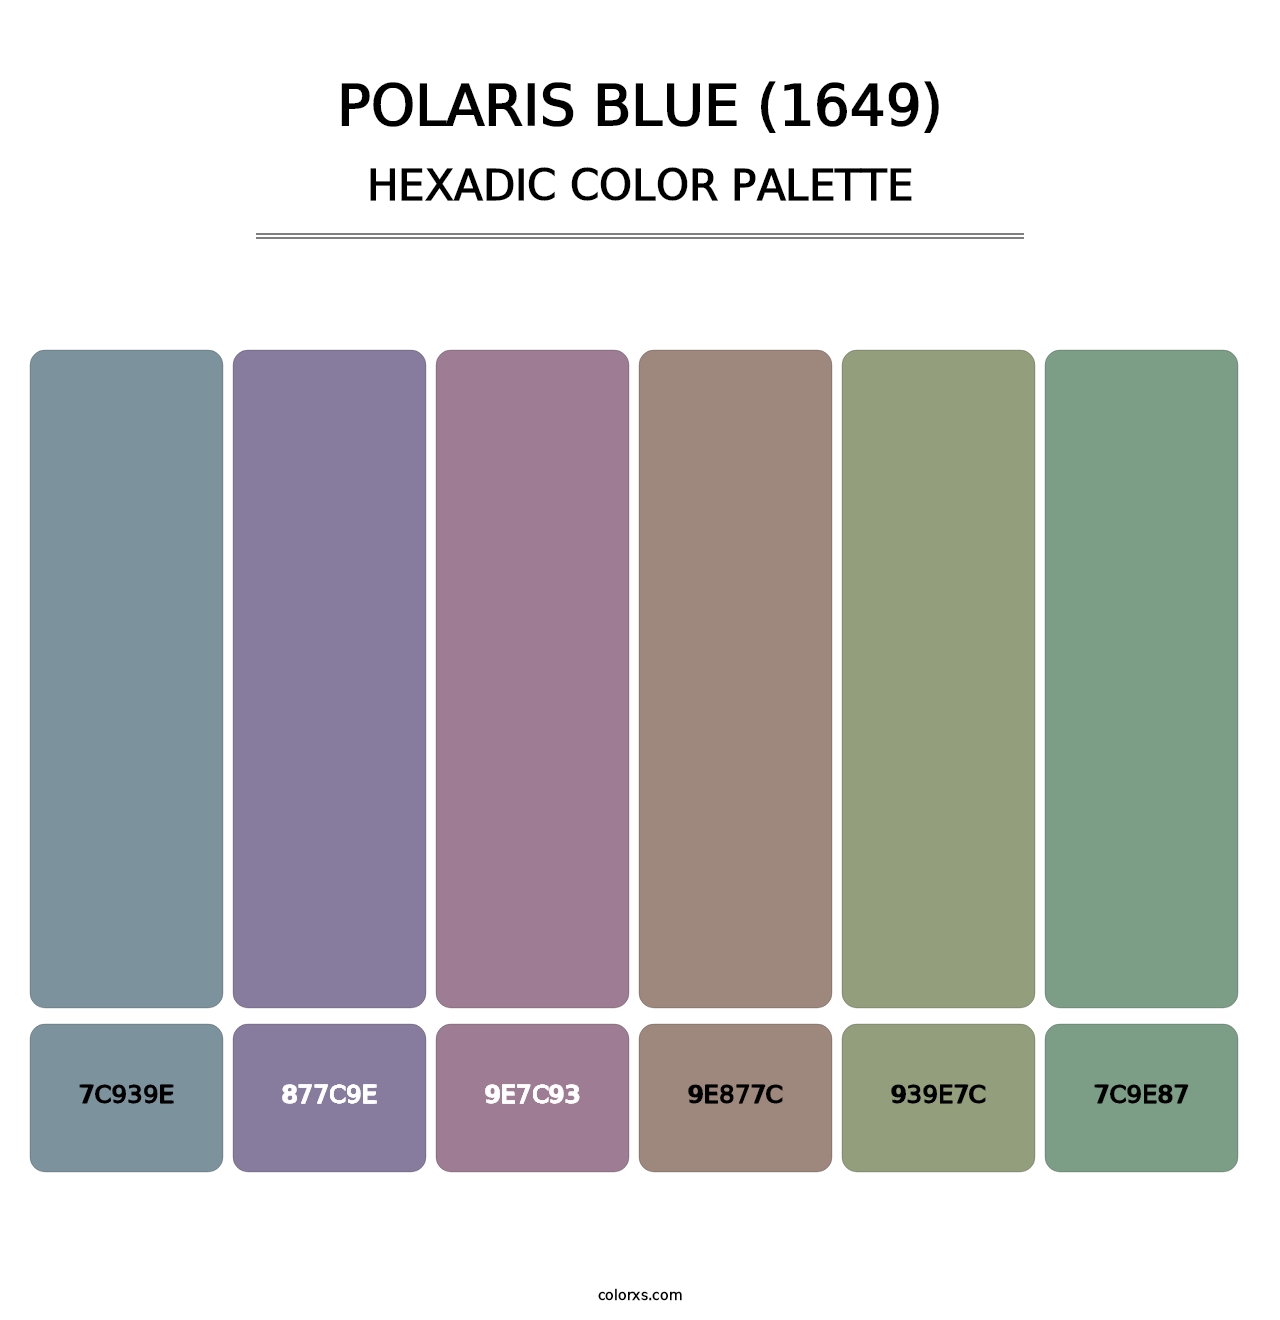 Polaris Blue (1649) - Hexadic Color Palette